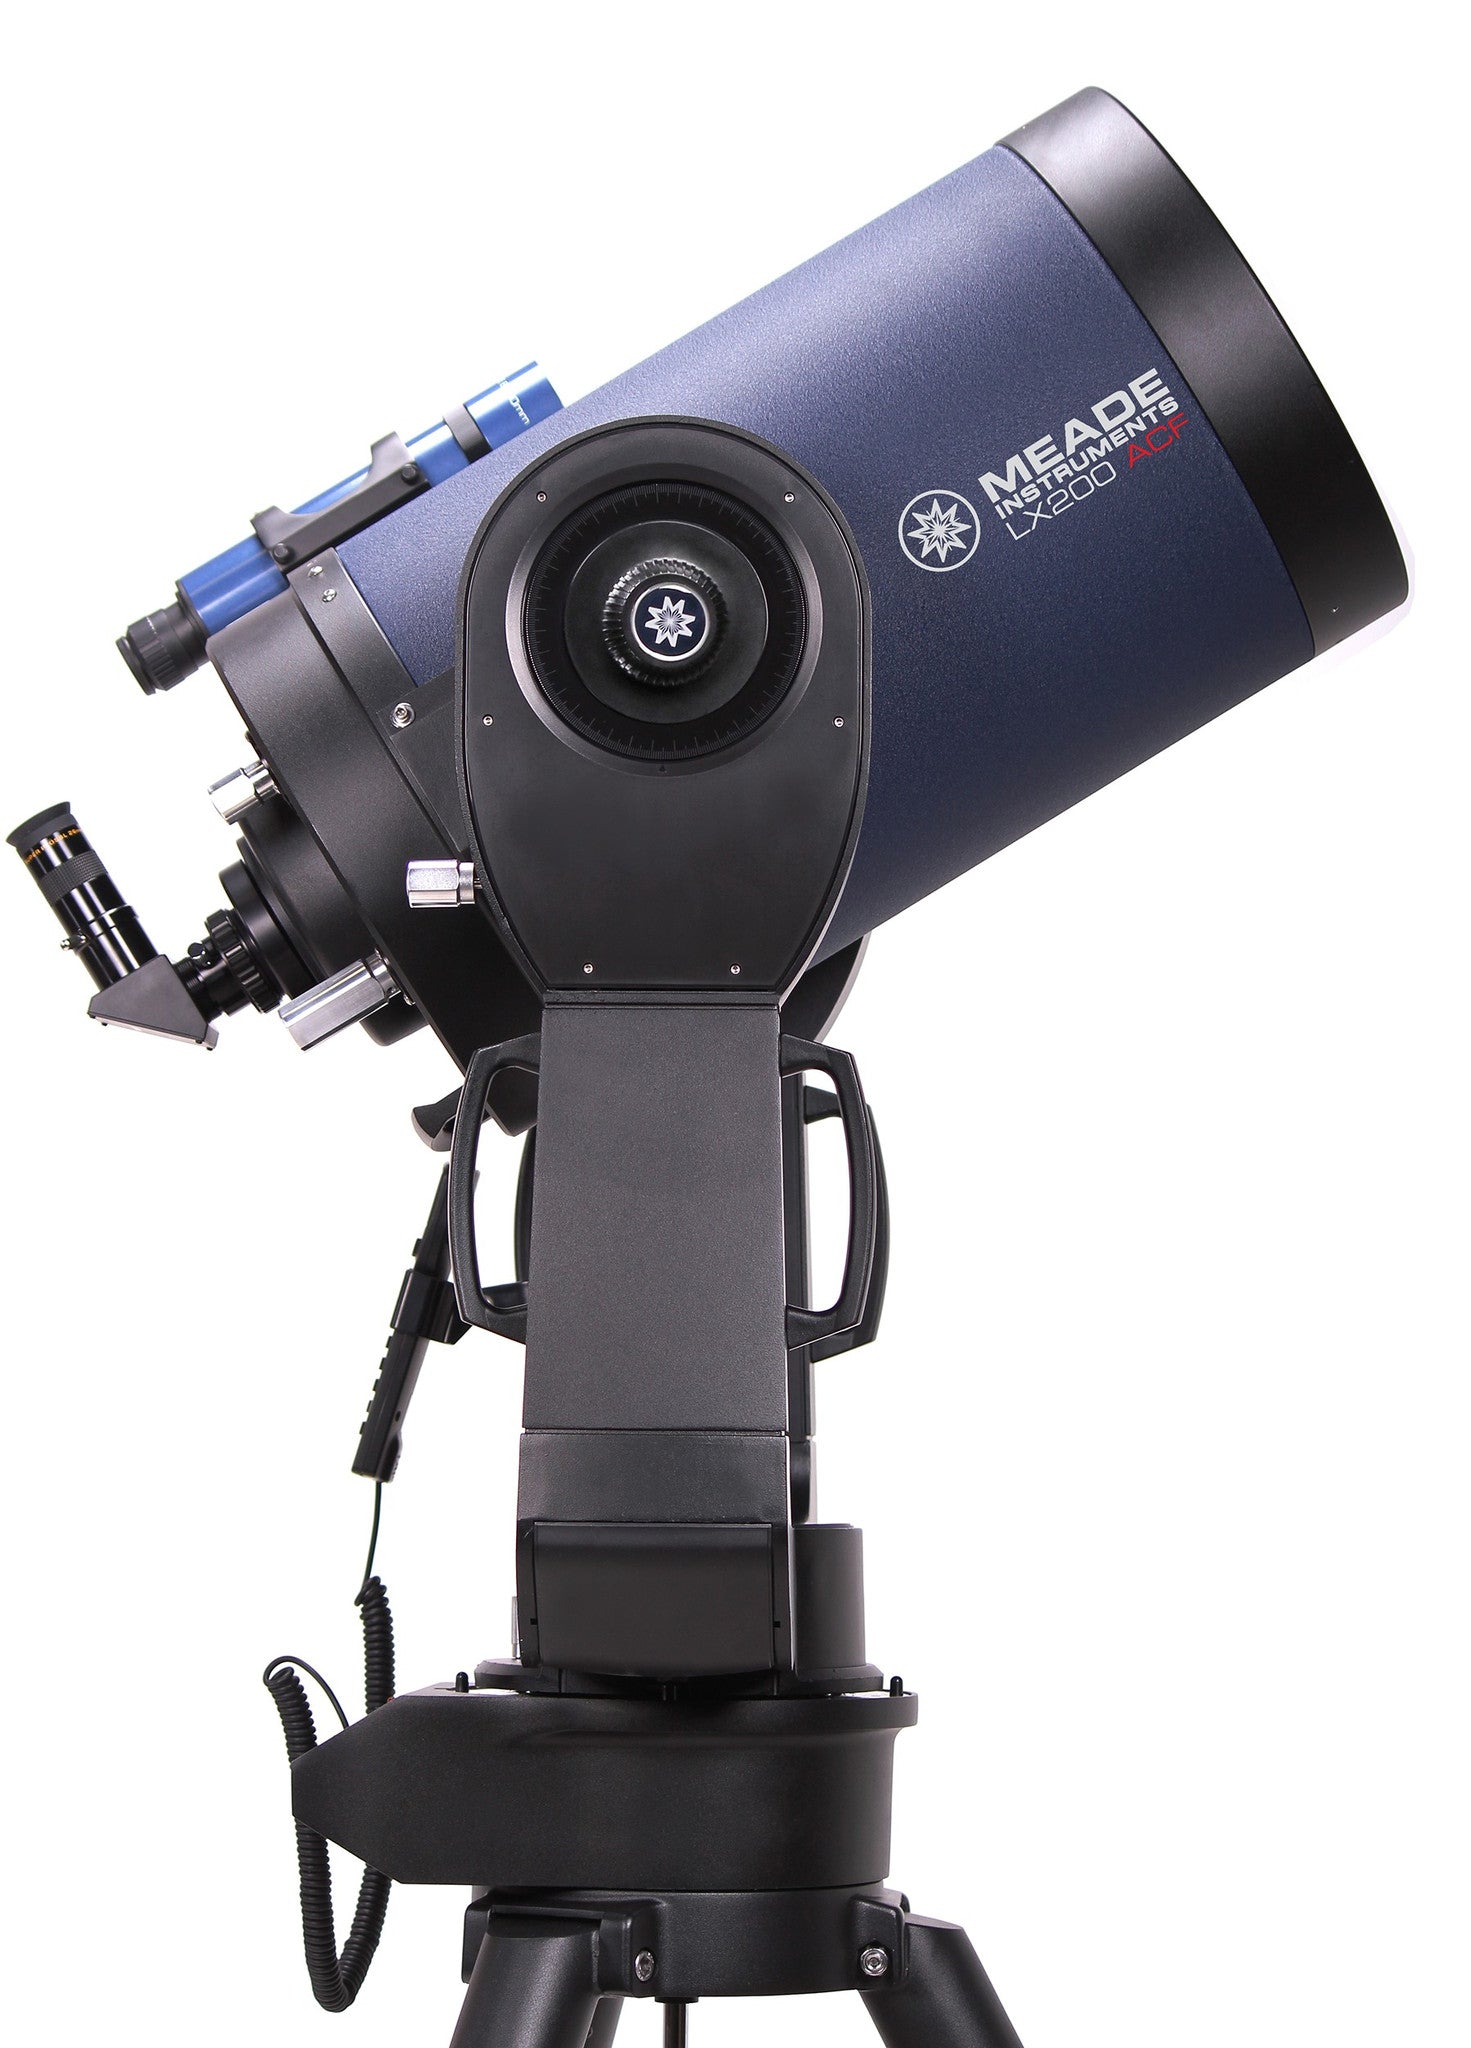 10 meade telescope